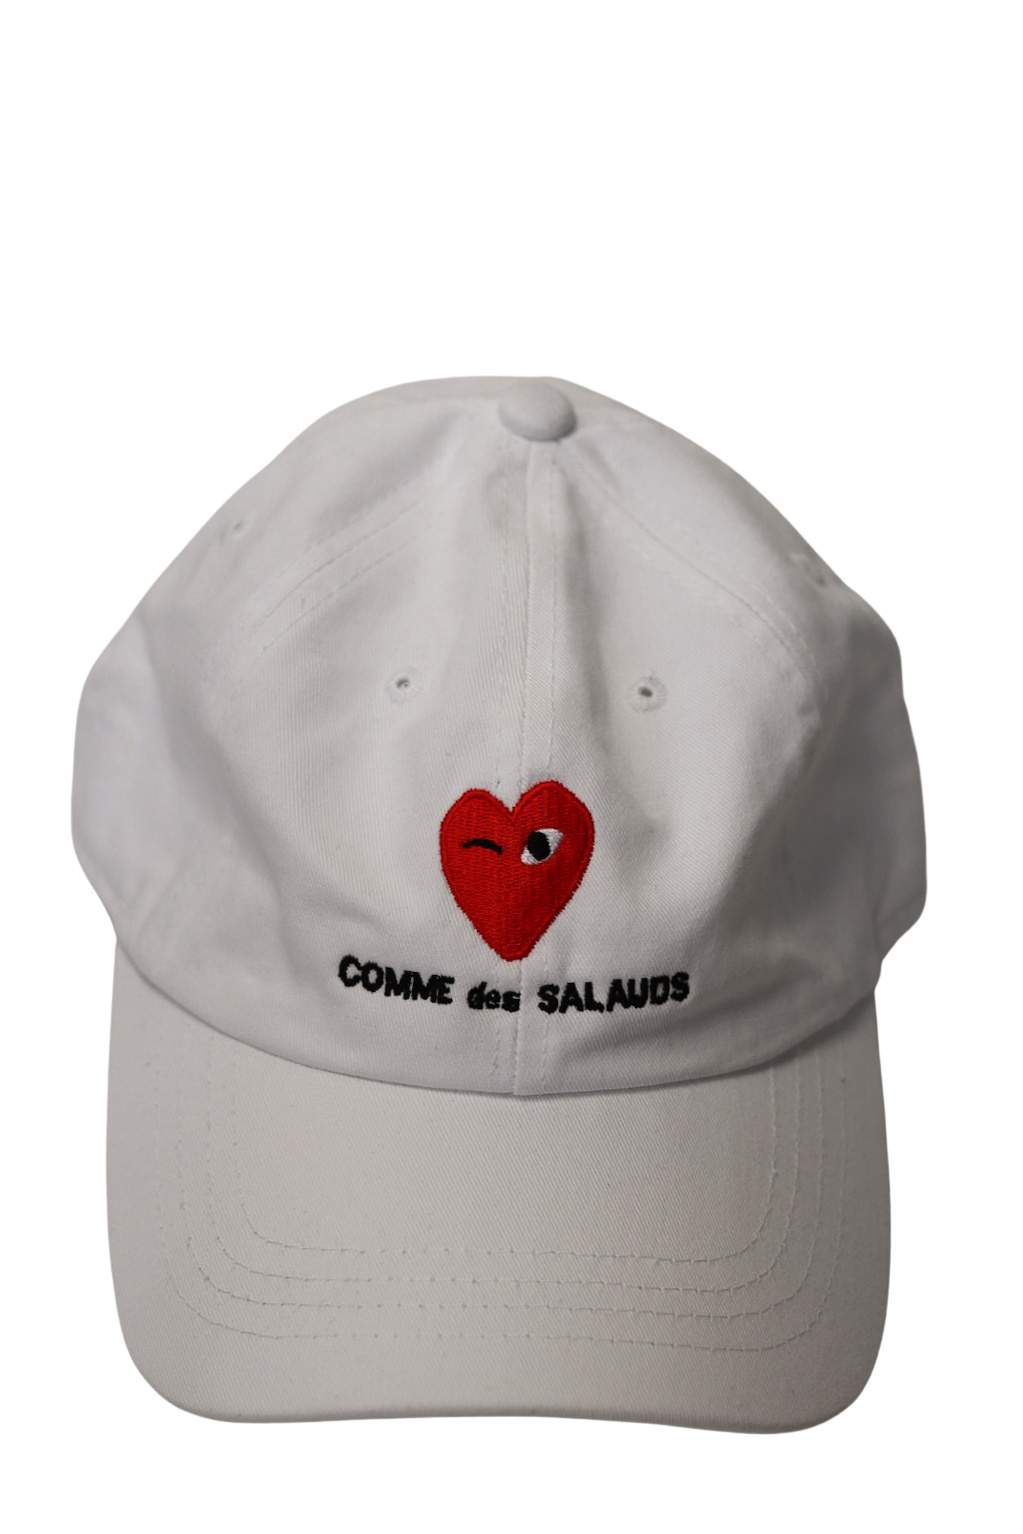 COMME DES SALAUDS CAP